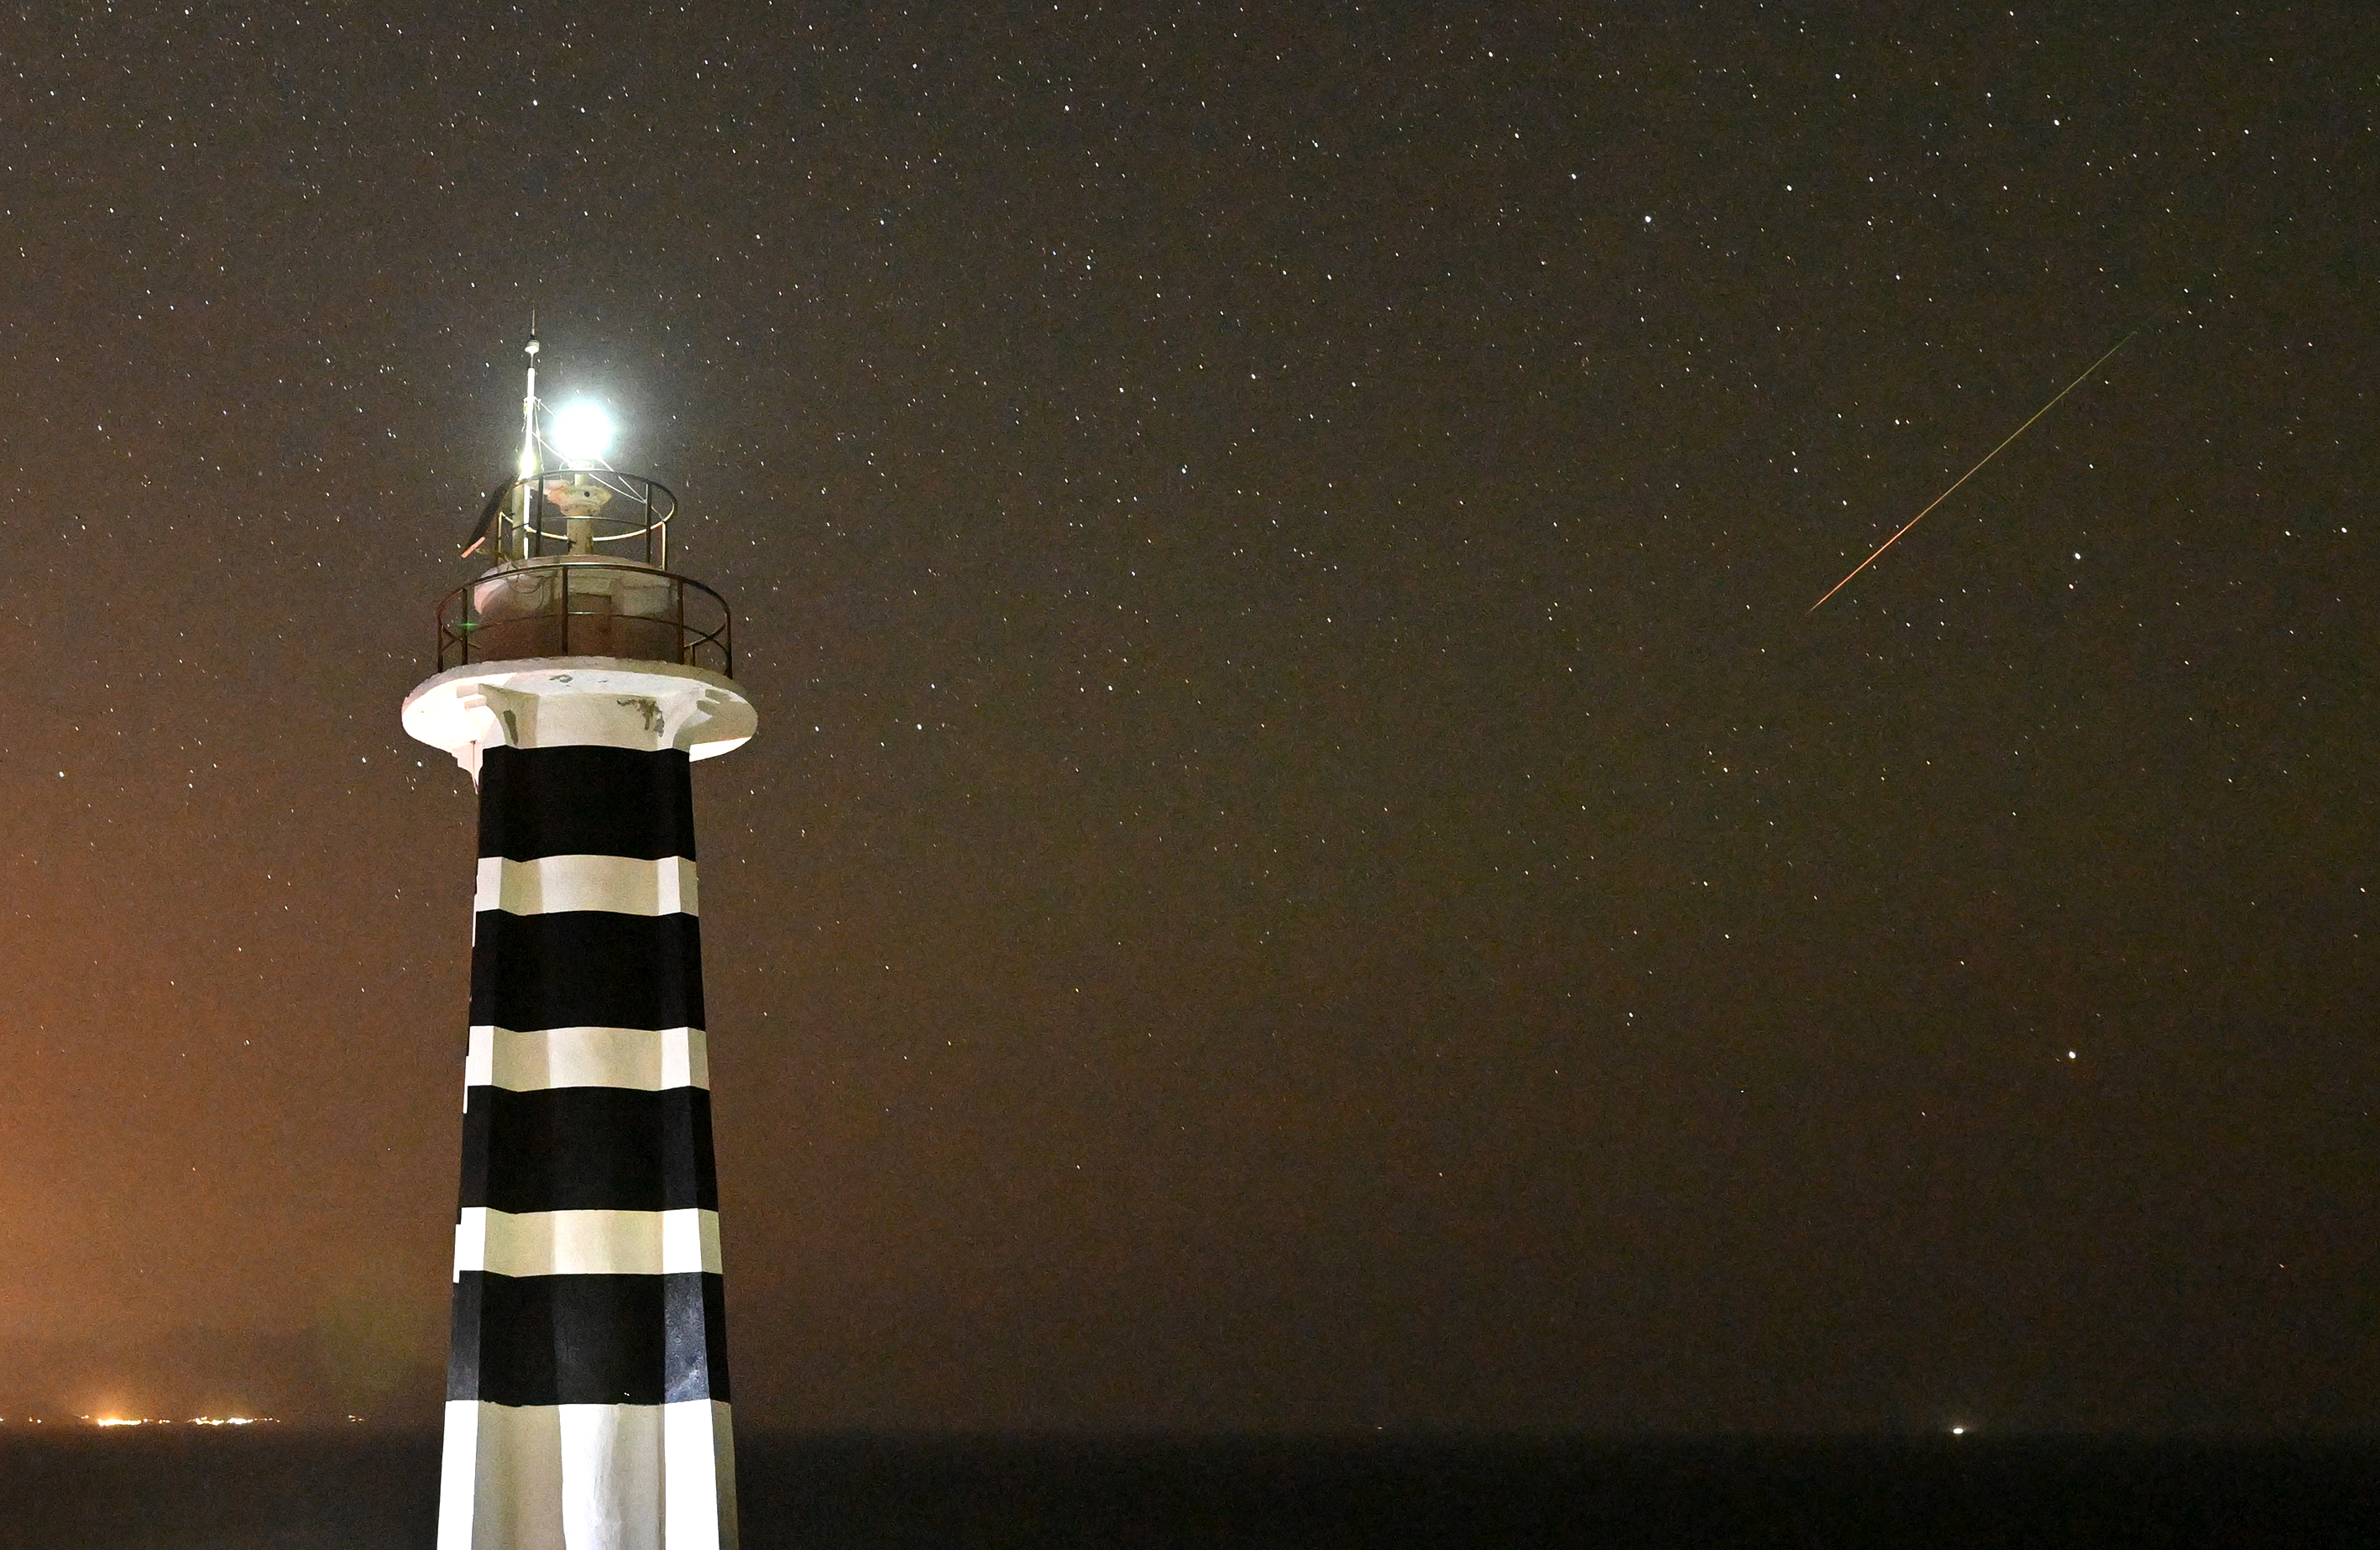 La meteora delle Perseidi sulla destra e un luminoso faro a strisce bianche e nere sulla sinistra.